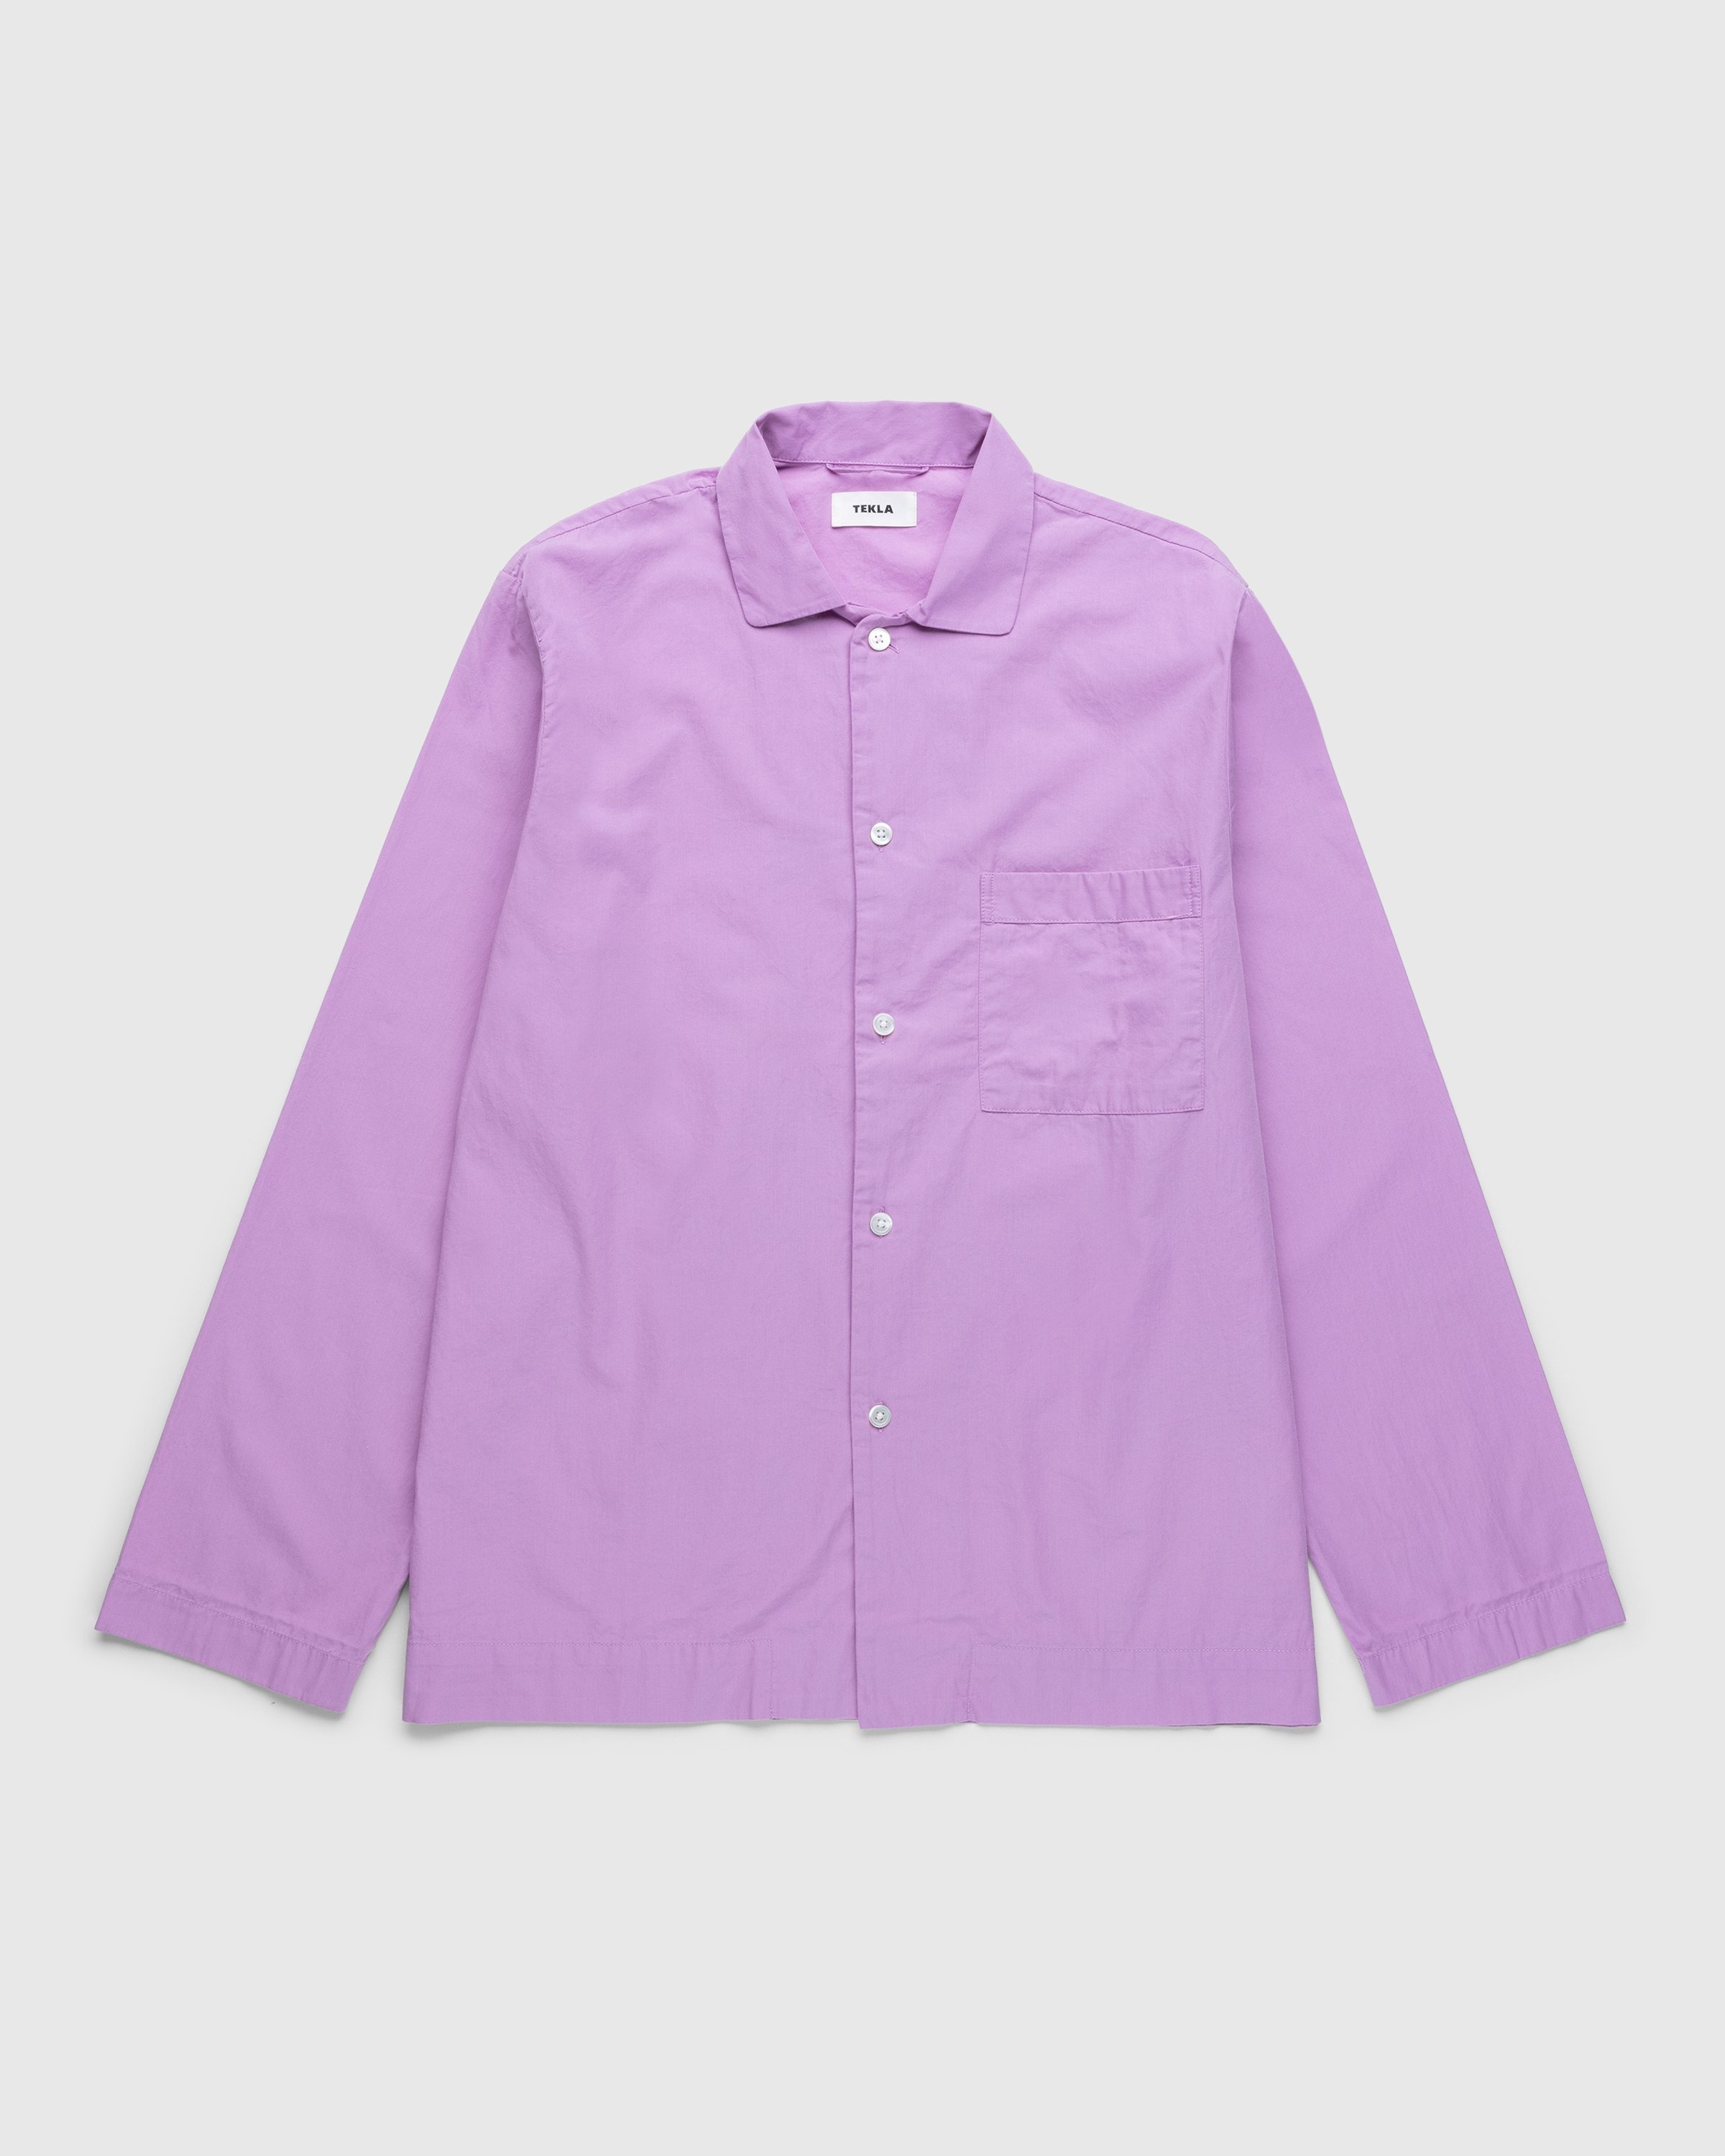 Tekla – Cotton Poplin Pyjamas Shirt Purple Pink - Pyjamas - Pink - Image 1